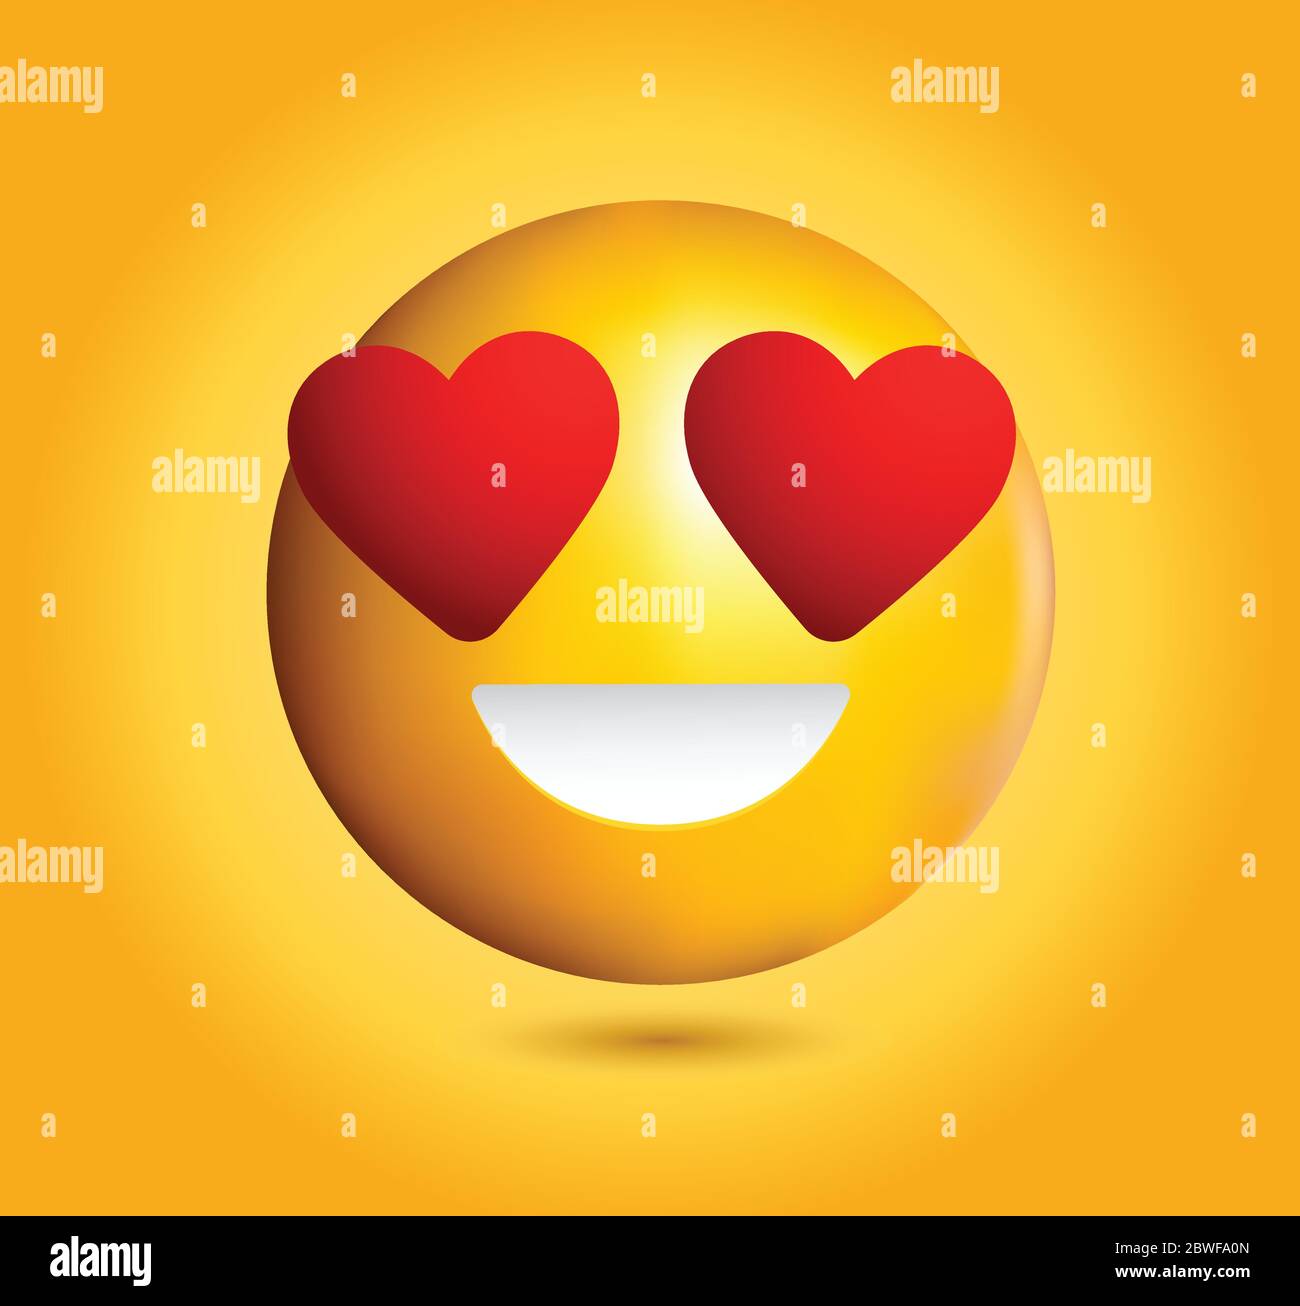 Émoticone de haute qualité souriant, amour emoji isolé sur fond jaune dégradé. Émotiji de visage jaune avec yeux rouges et illustration du vecteur de sourire. Illustration de Vecteur